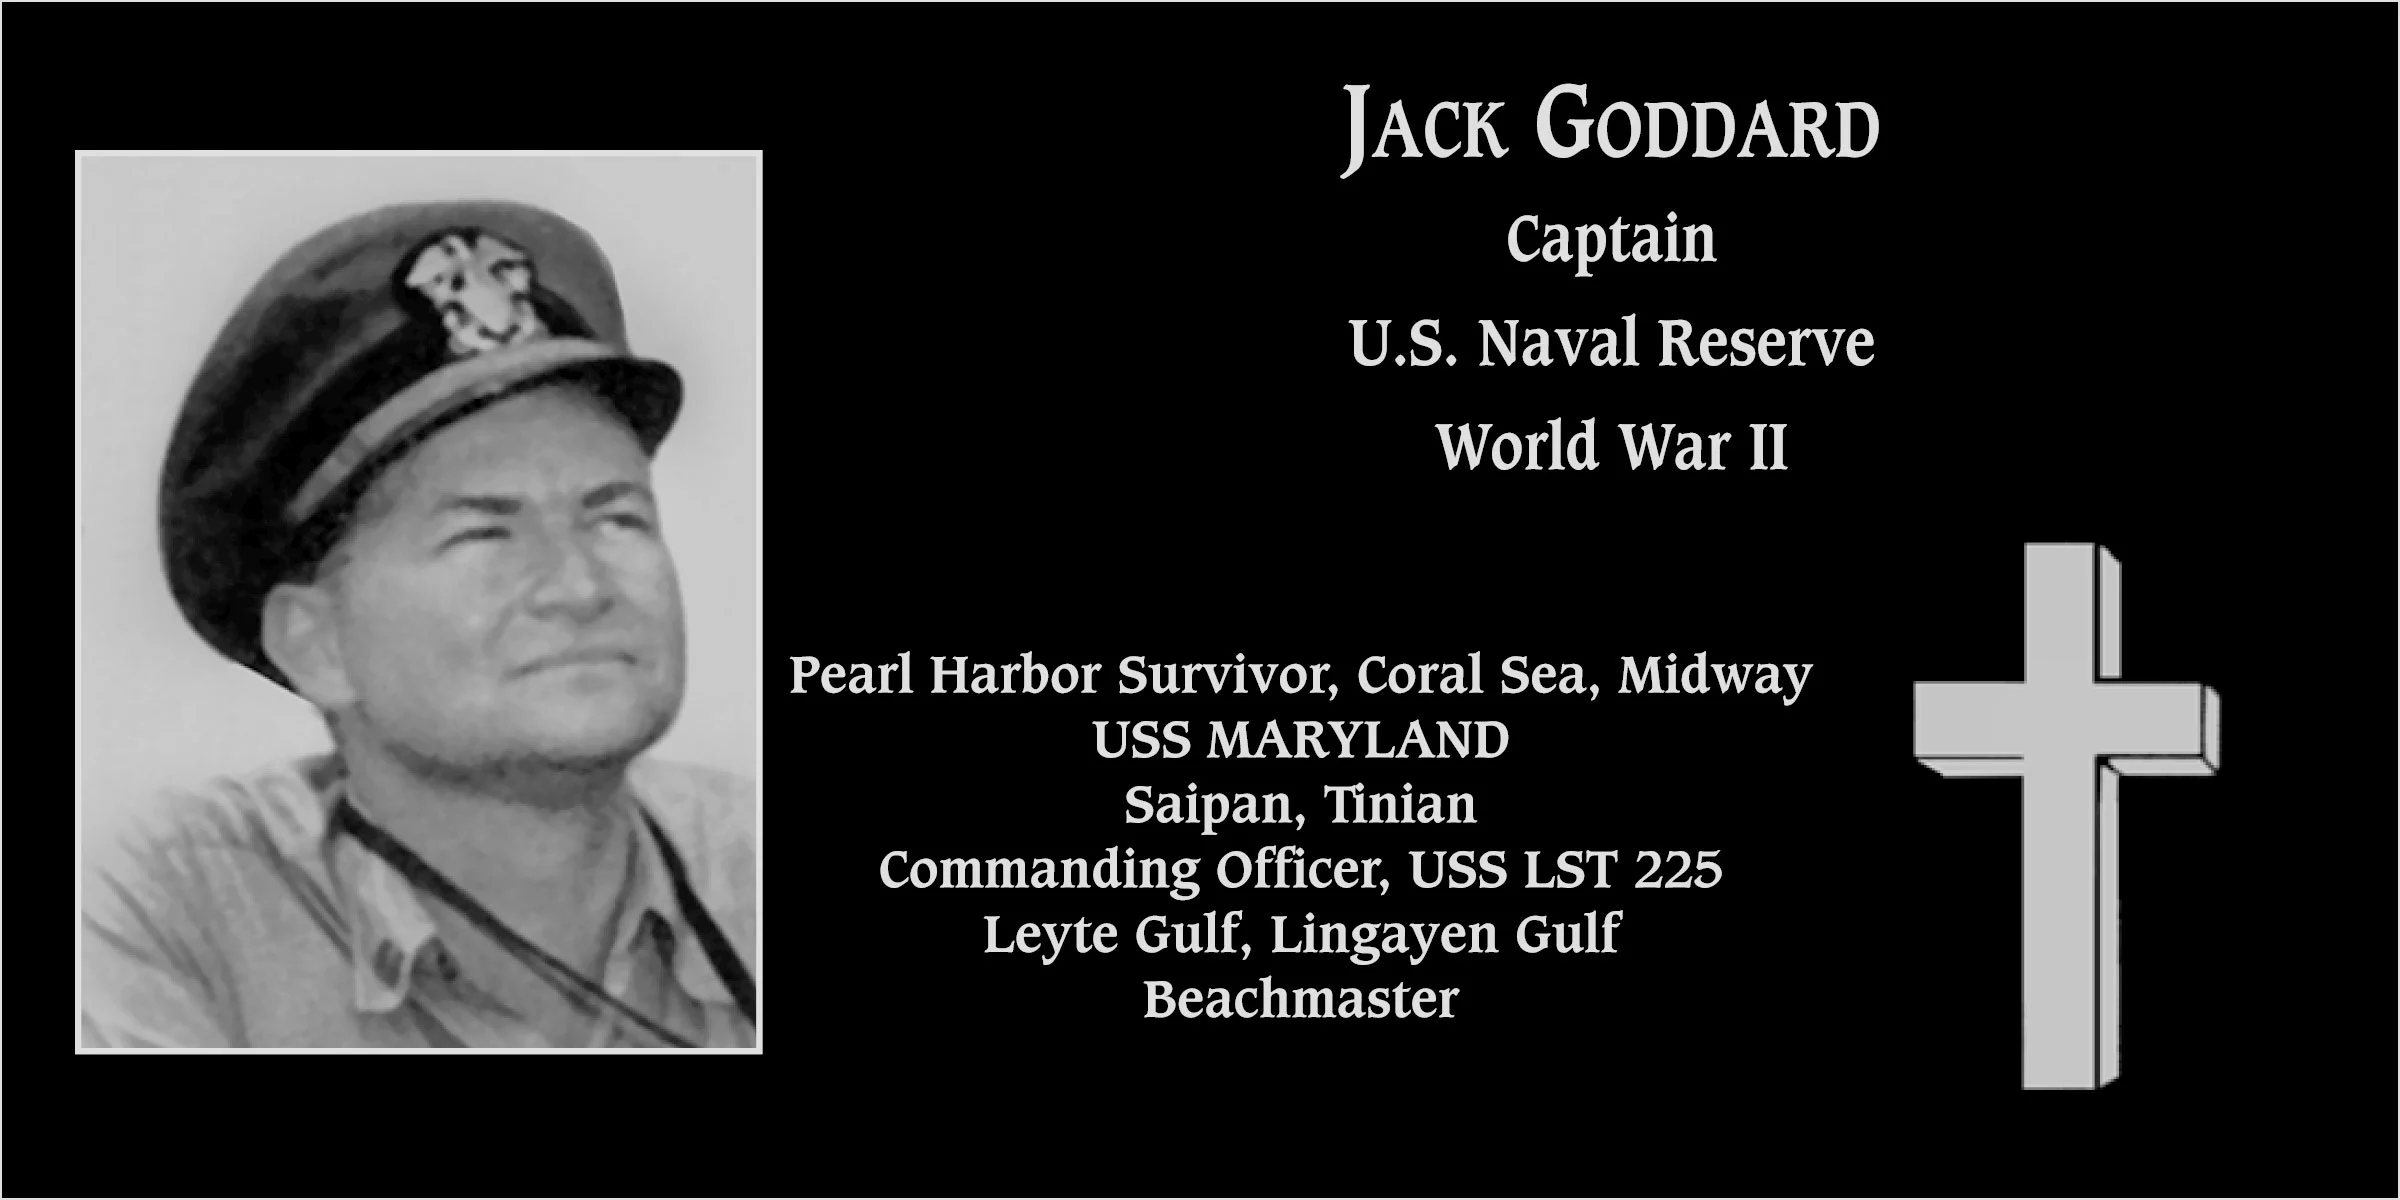 Jack Goddard